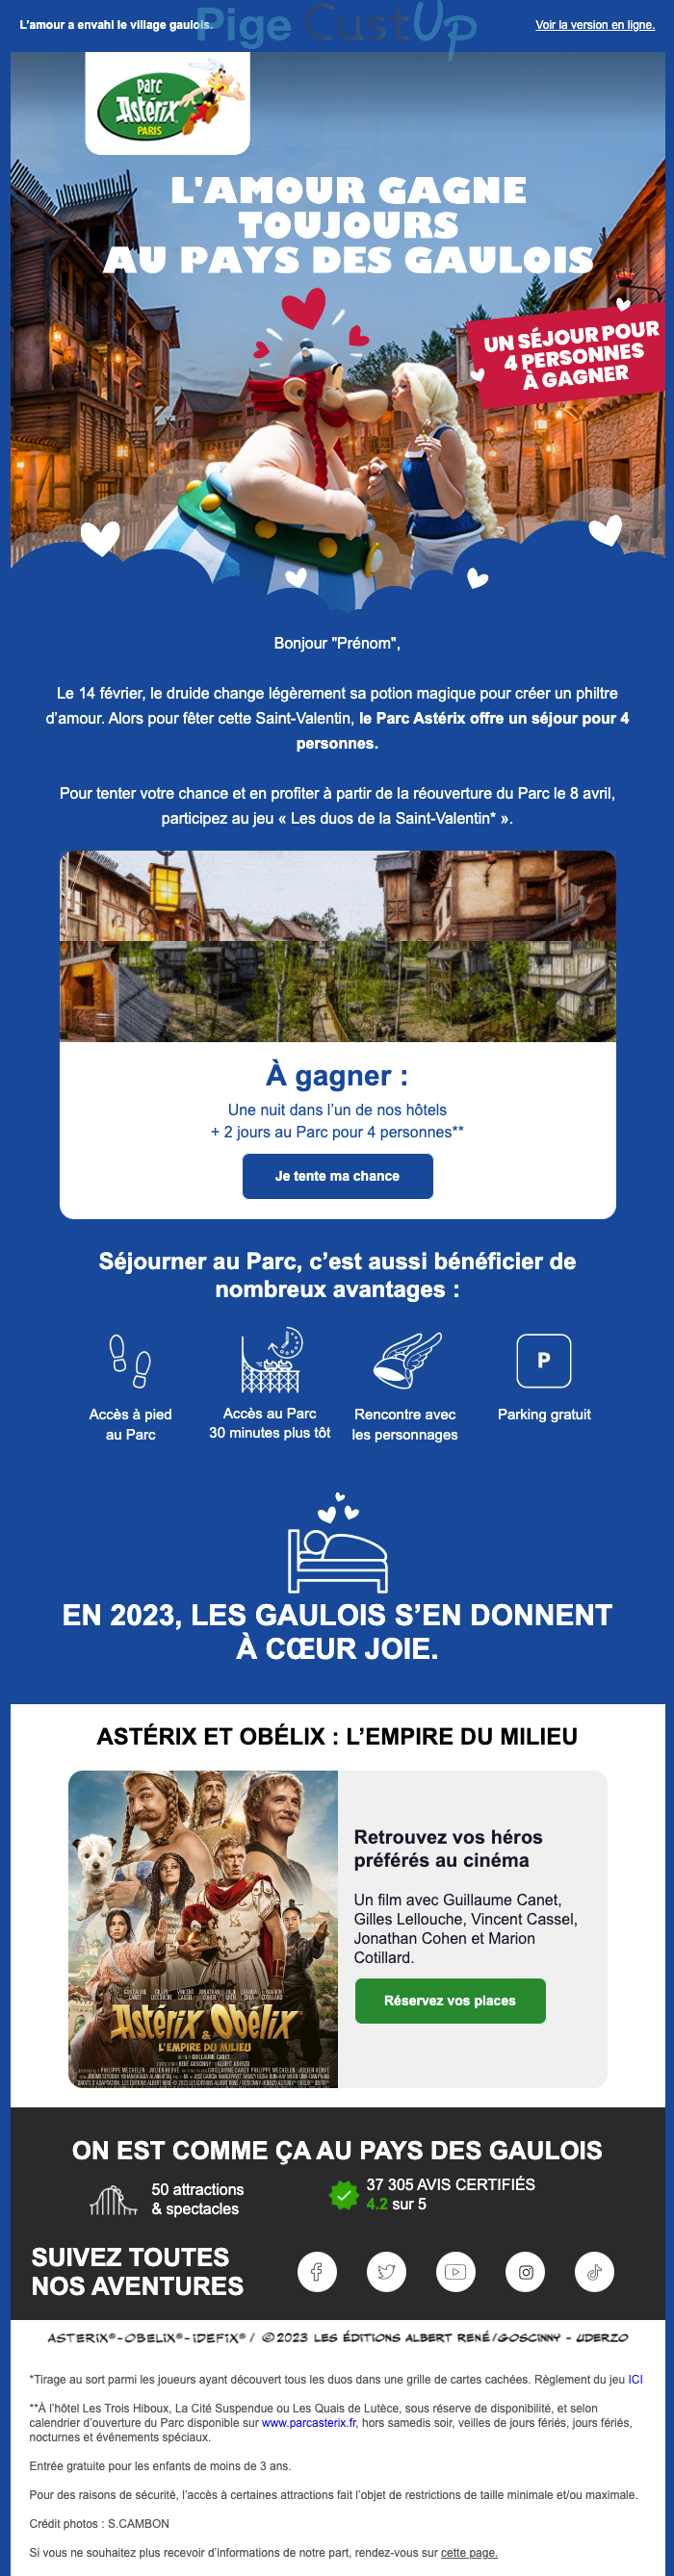 Exemple de Type de media  e-mailing - Parc Astérix - Marketing relationnel - Calendaire (Noël, St valentin, Vœux, …) - Marketing Acquisition - Jeu promo